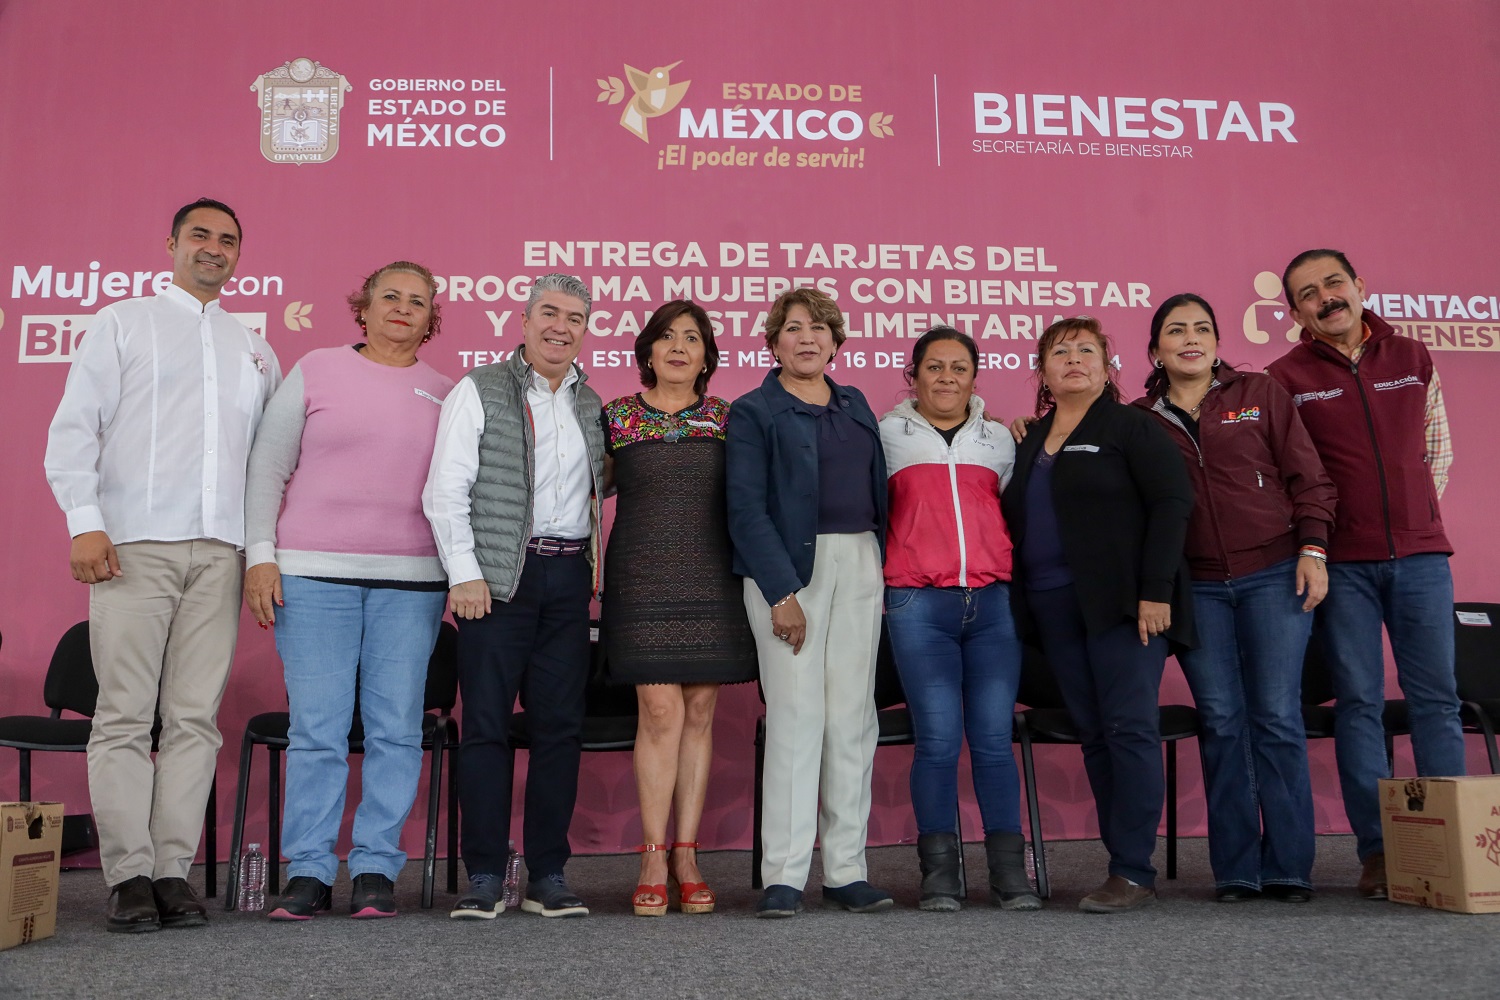 Gobernadora Delfina Gómez entrega 12 mil tarjetas Mujeres con Bienestar y Canastas Alimentarias en Texcoco; “la buena administración permite llevar más recursos a quienes menos tienen”